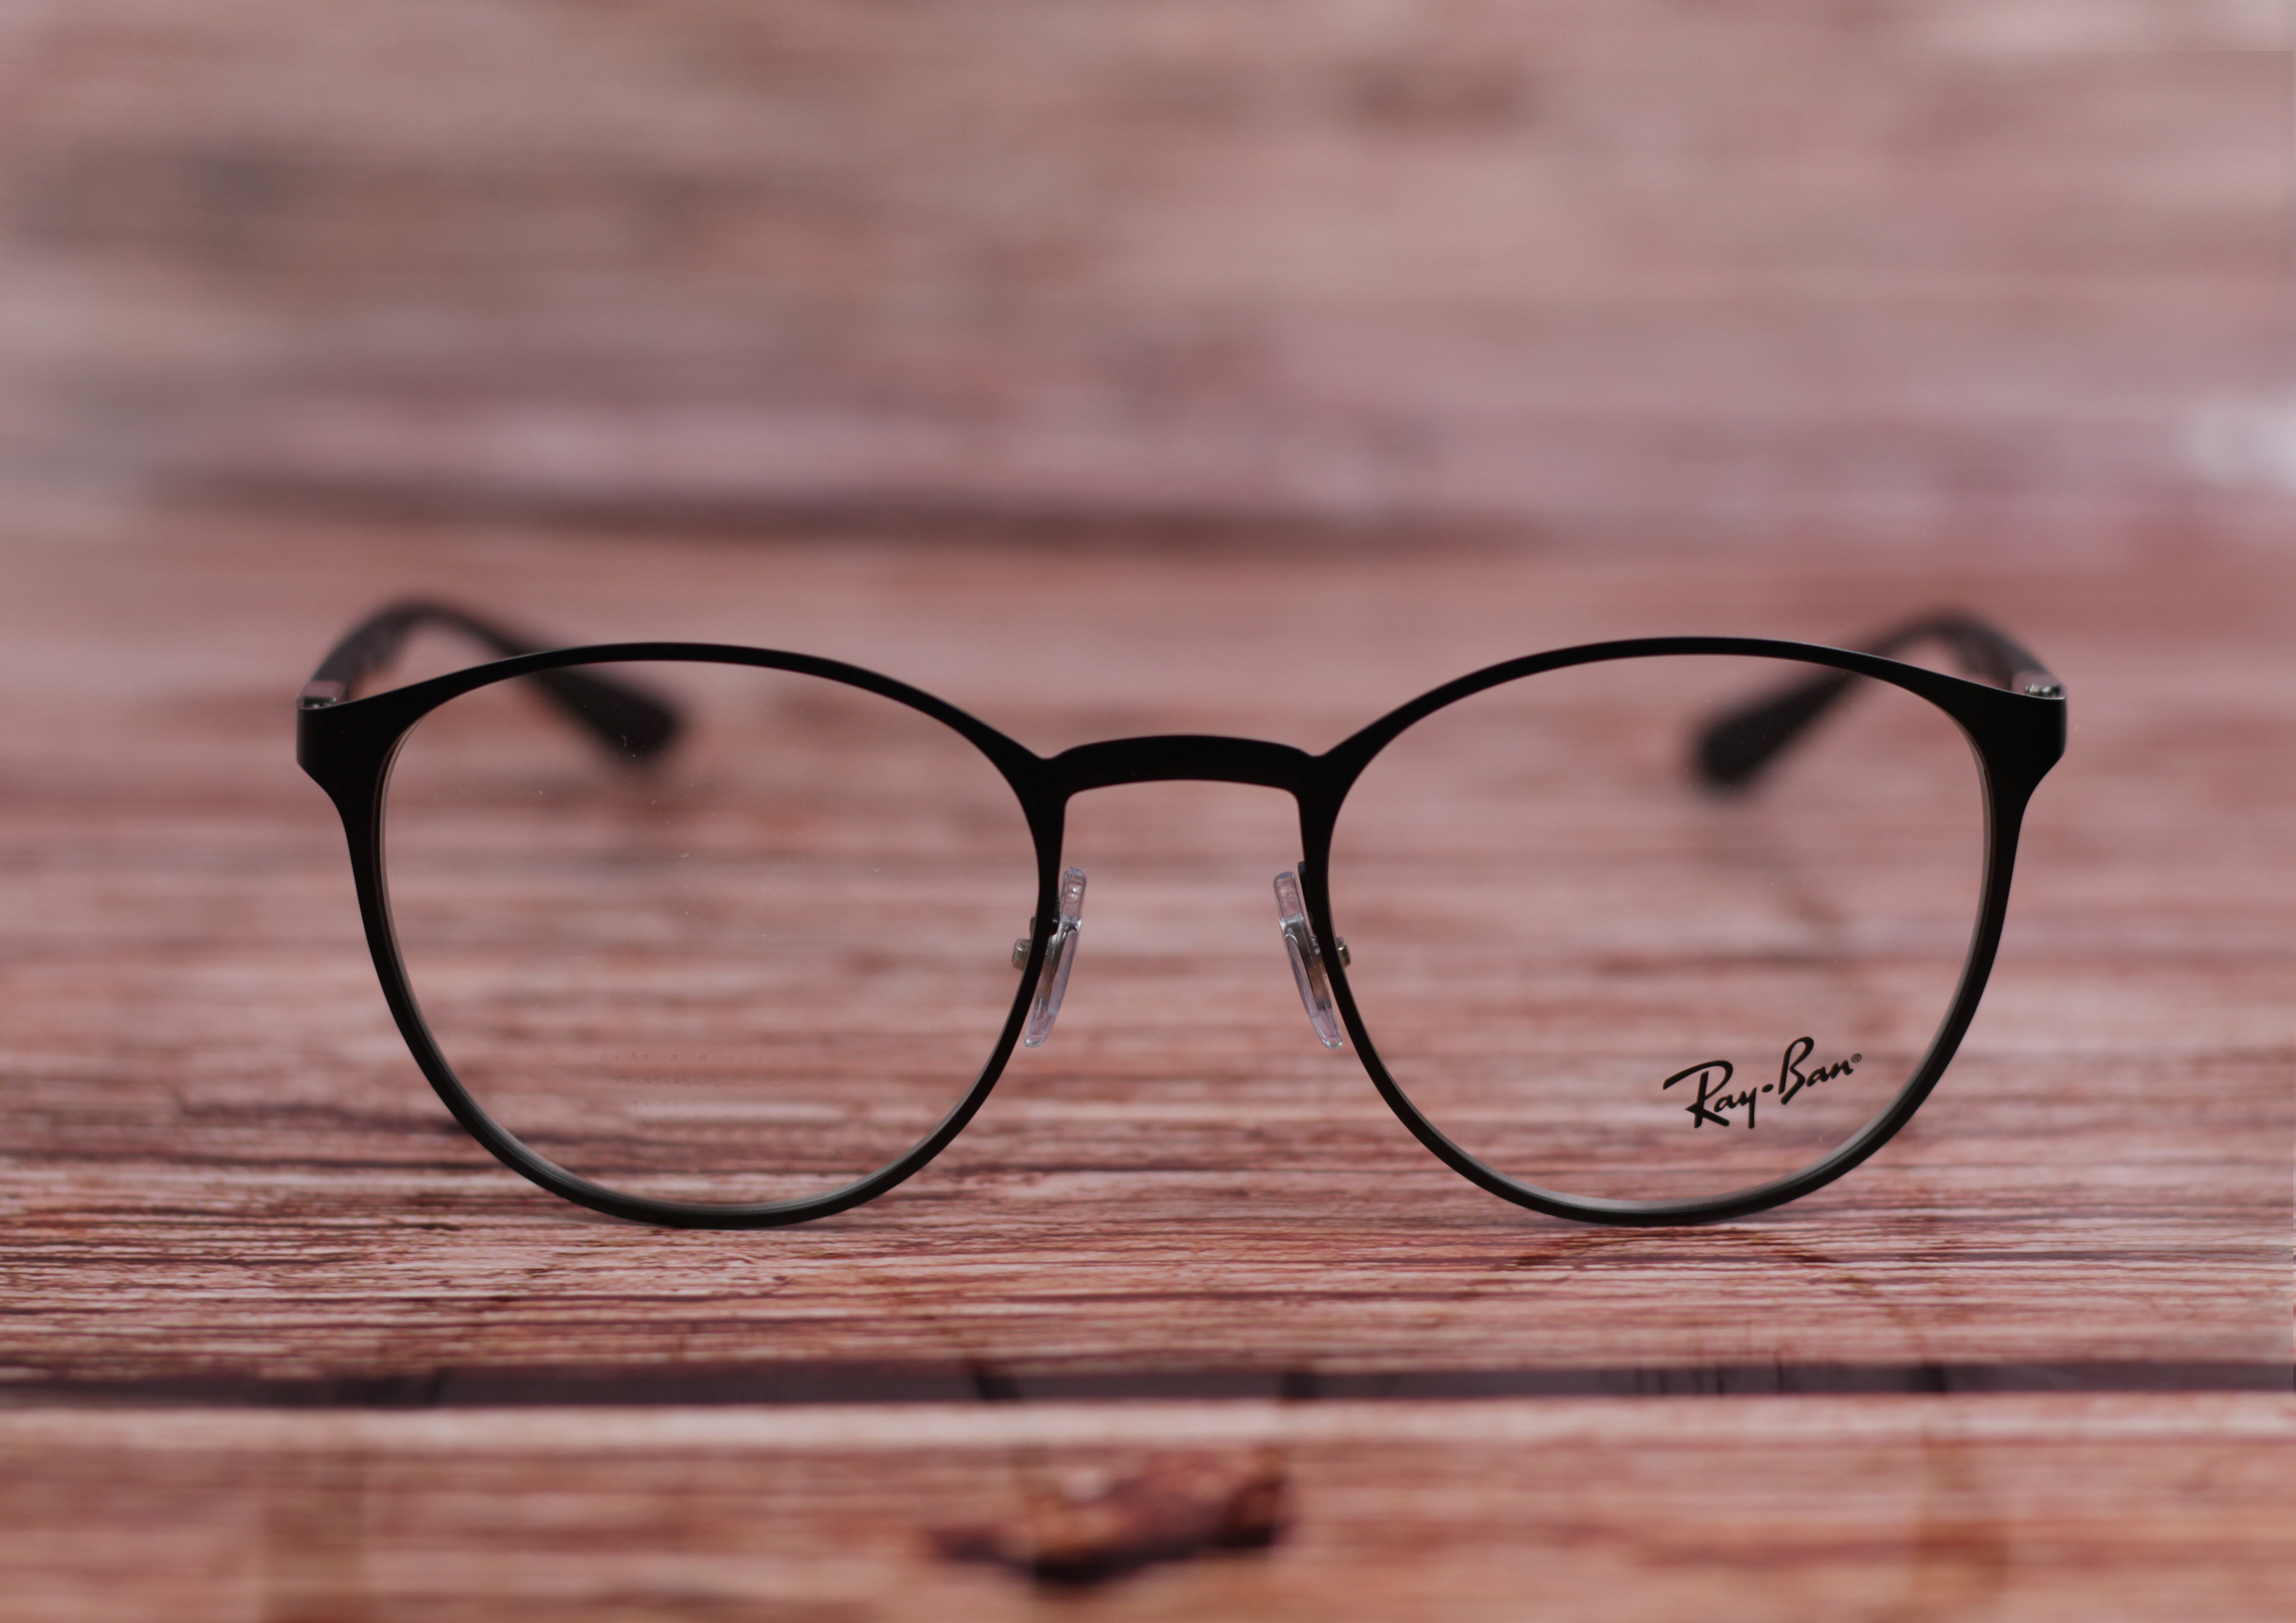 Reebok brille - Der absolute Testsieger unserer Tester